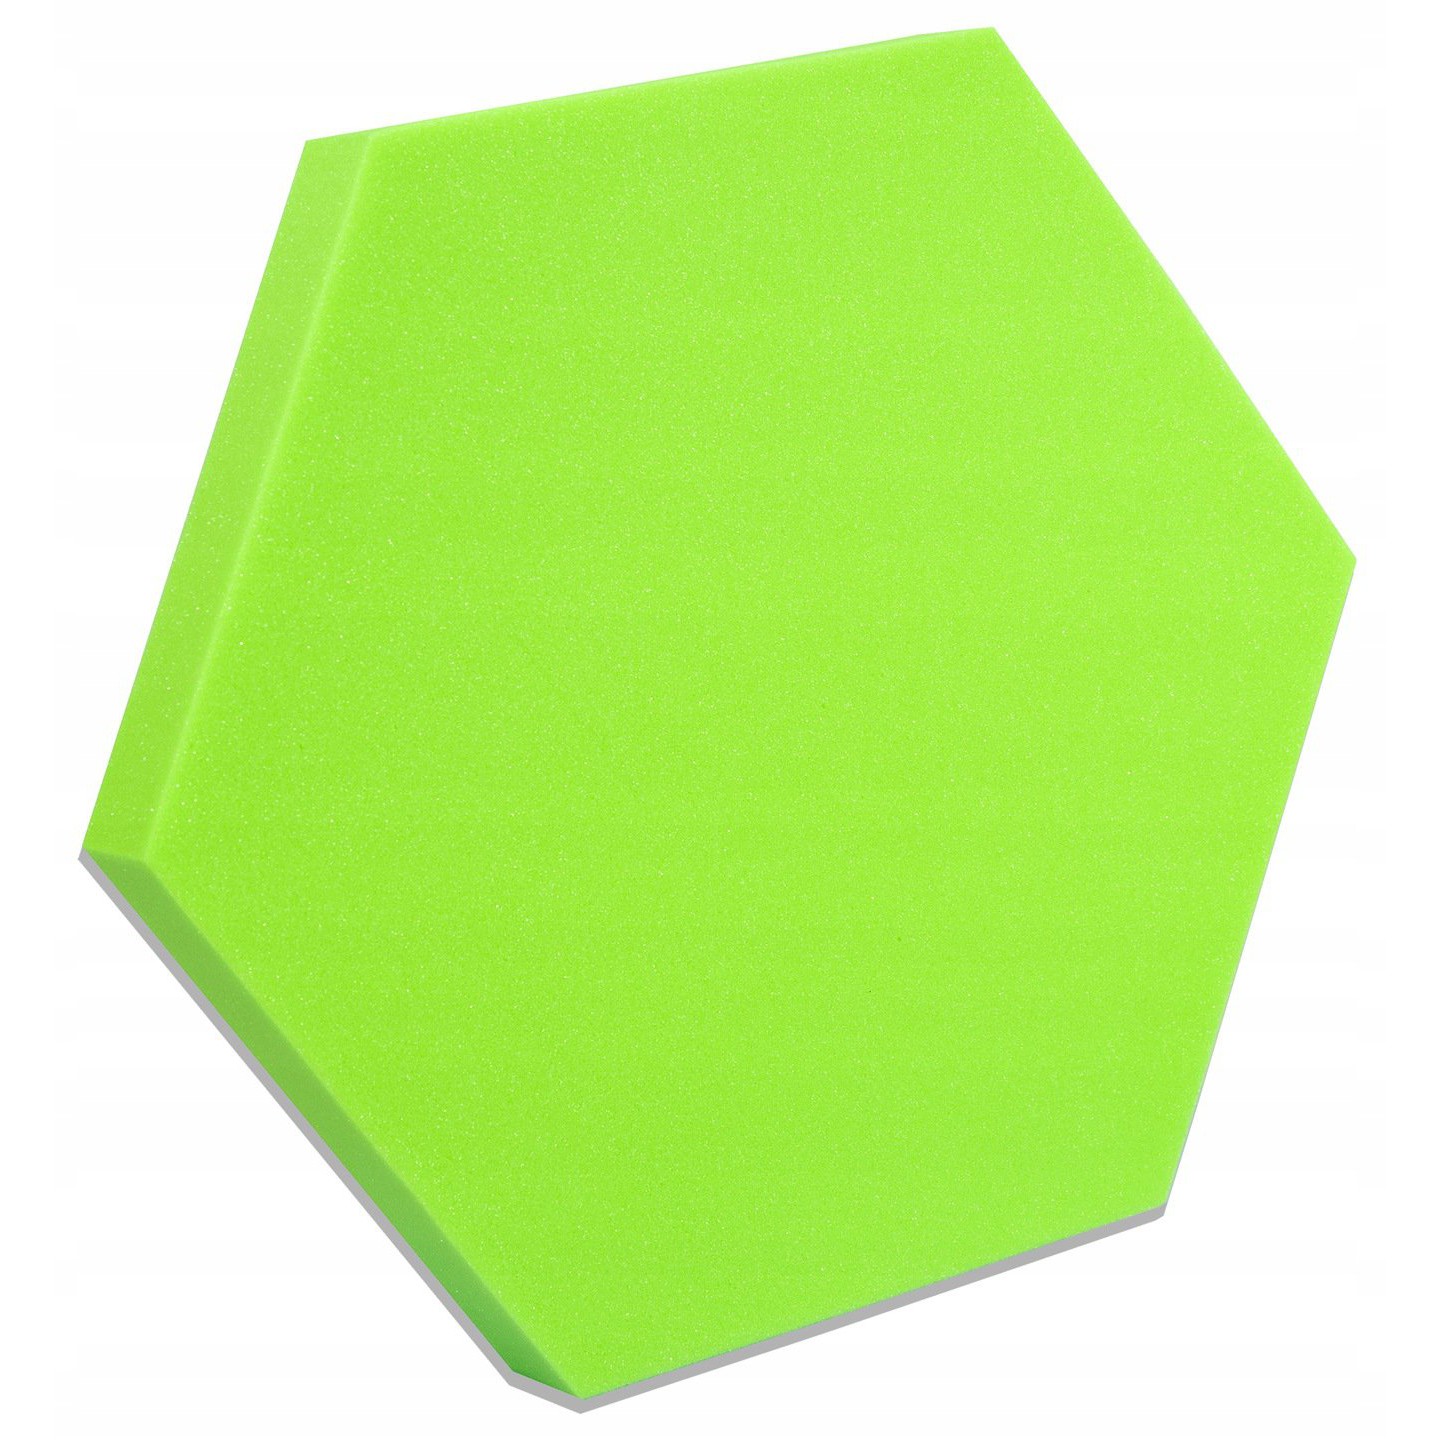 Akusztikus panel Hatszög zöld 50x50cmx3cm önkioltó nem gyúlékony hab omegamix.hu